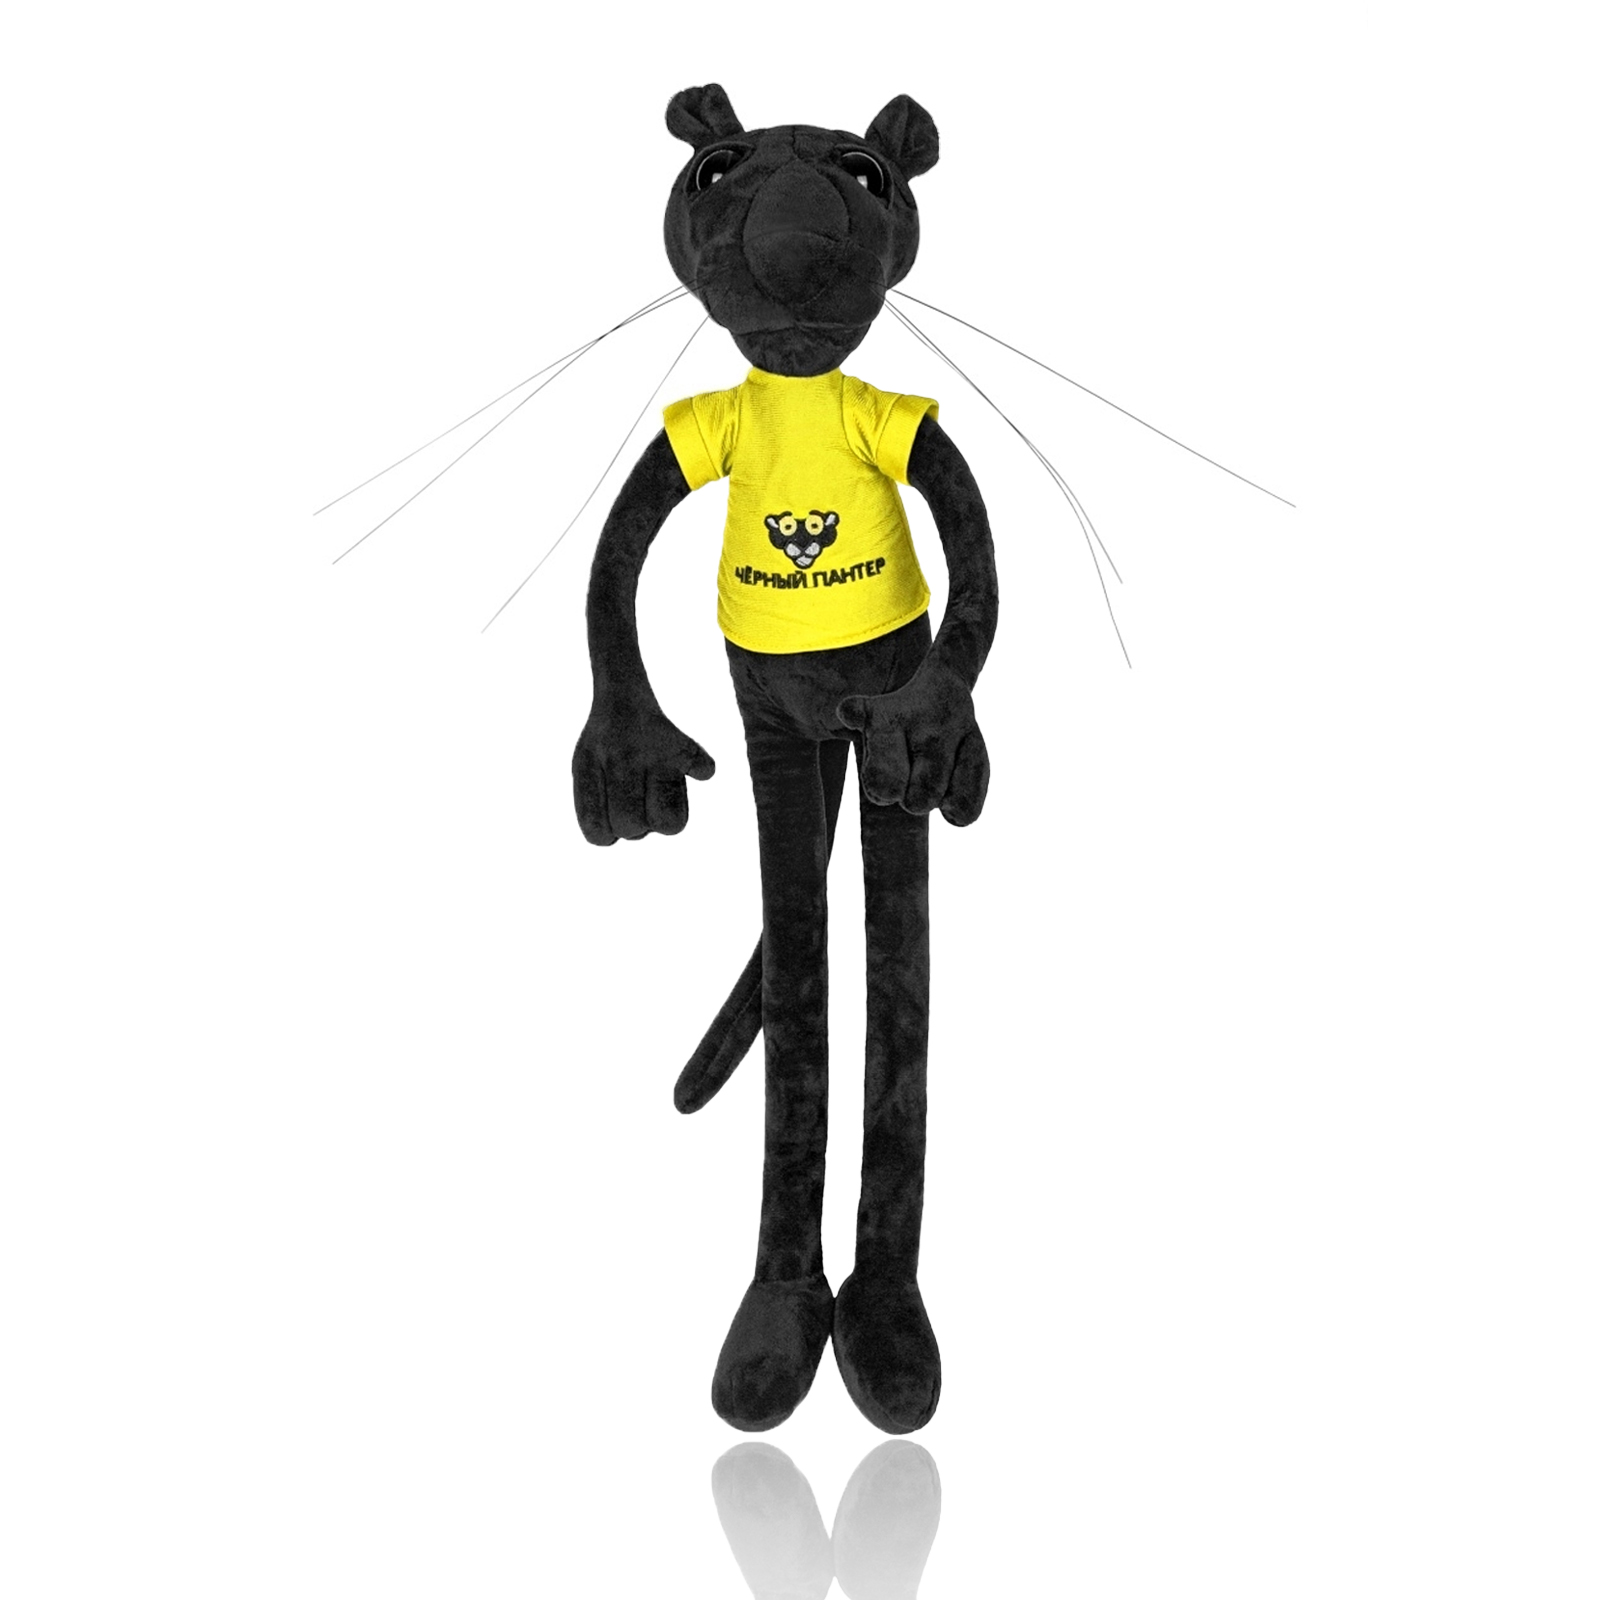 Мягкая игрушка Nano Shop Черная Пантера в желтой футболке, 100 см мягкая игрушка мэри море черная пантера 110 см